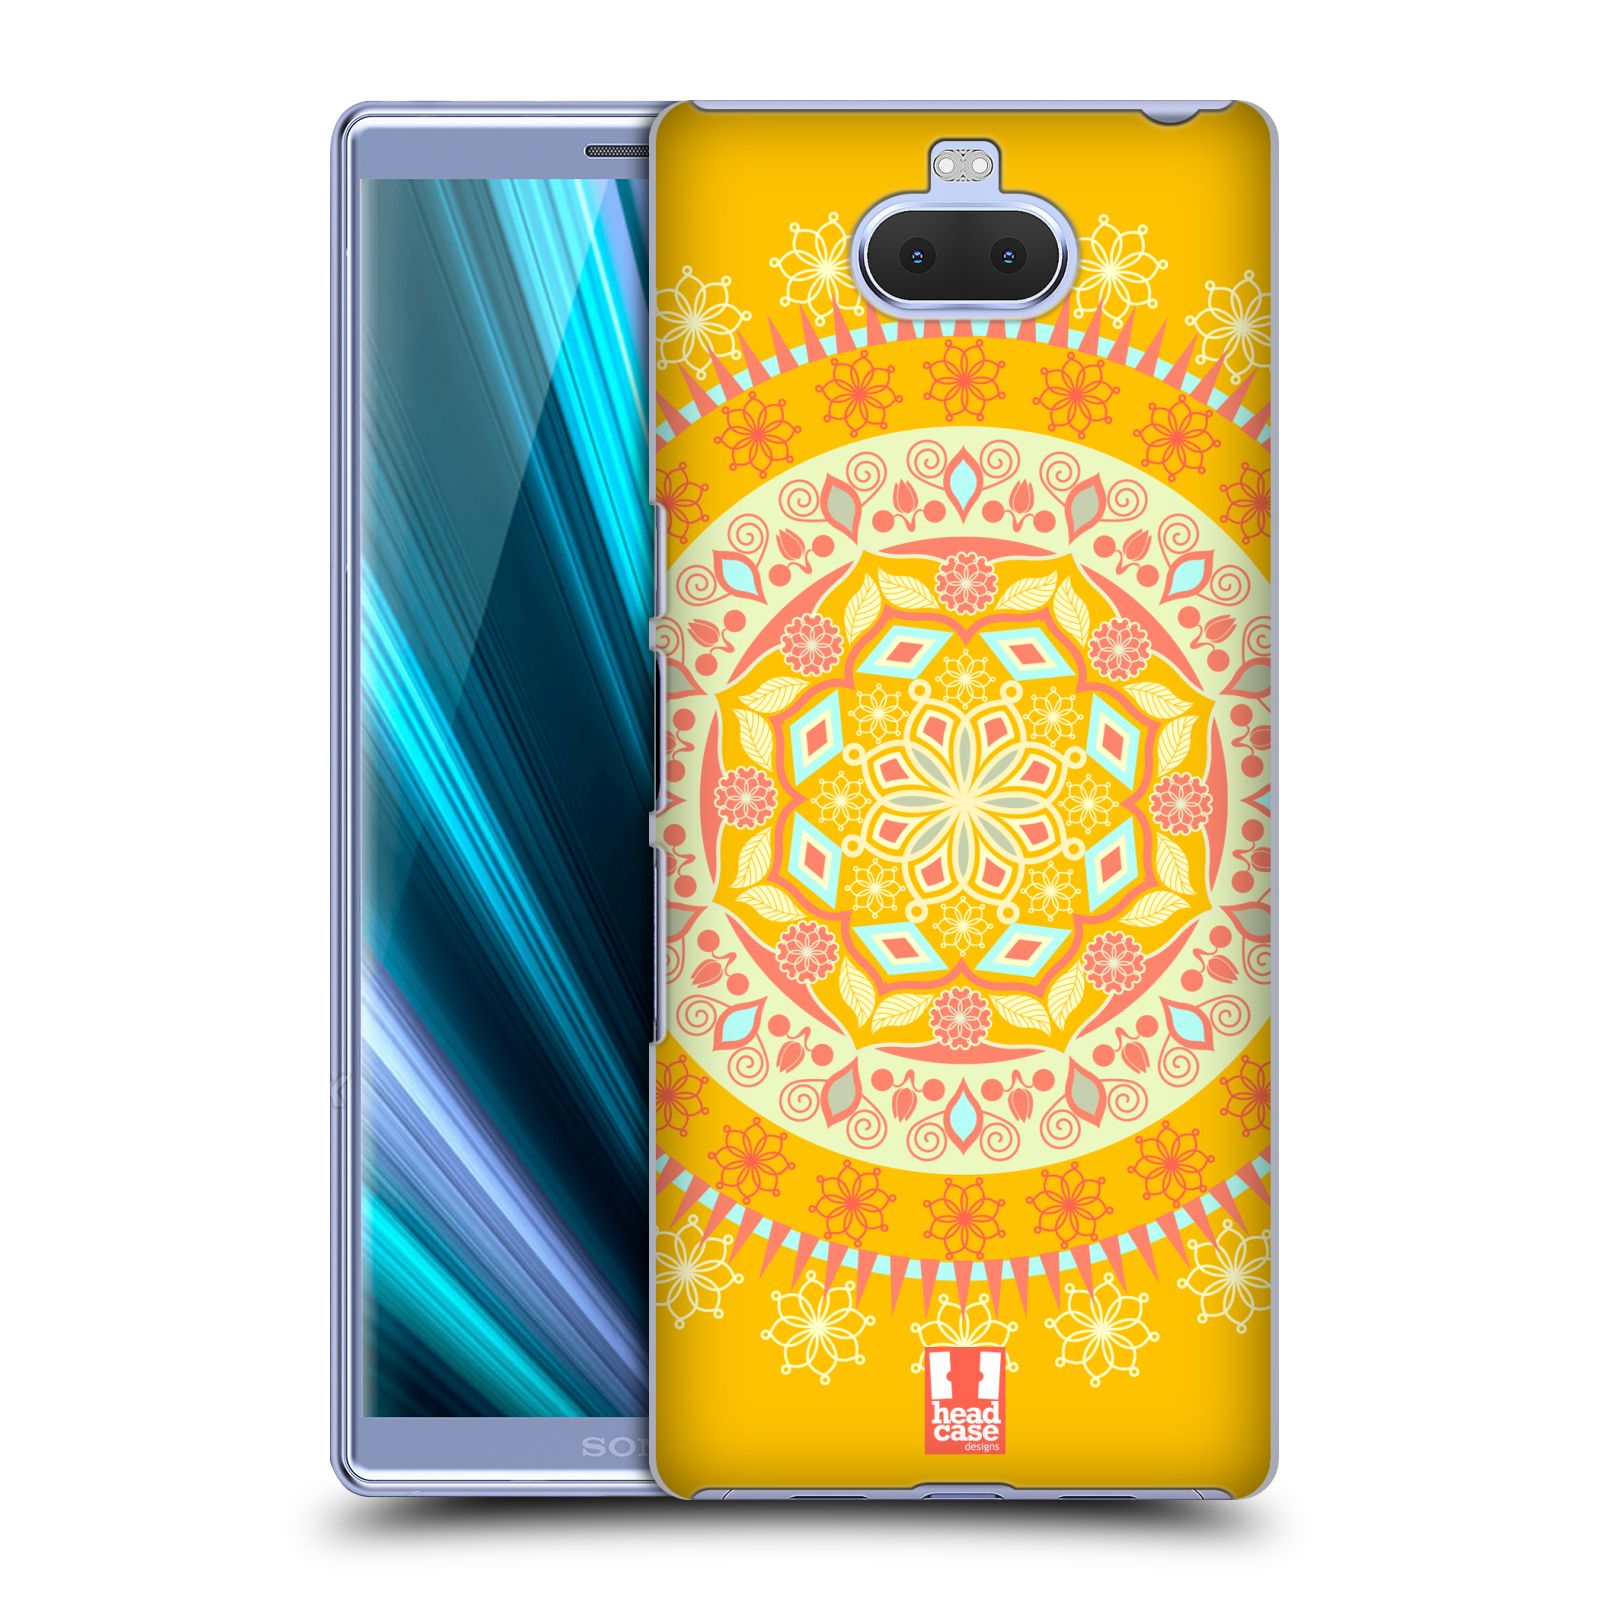 Pouzdro na mobil Sony Xperia 10 - Head Case - vzor Indie Mandala slunce barevný motiv ŽLUTÁ